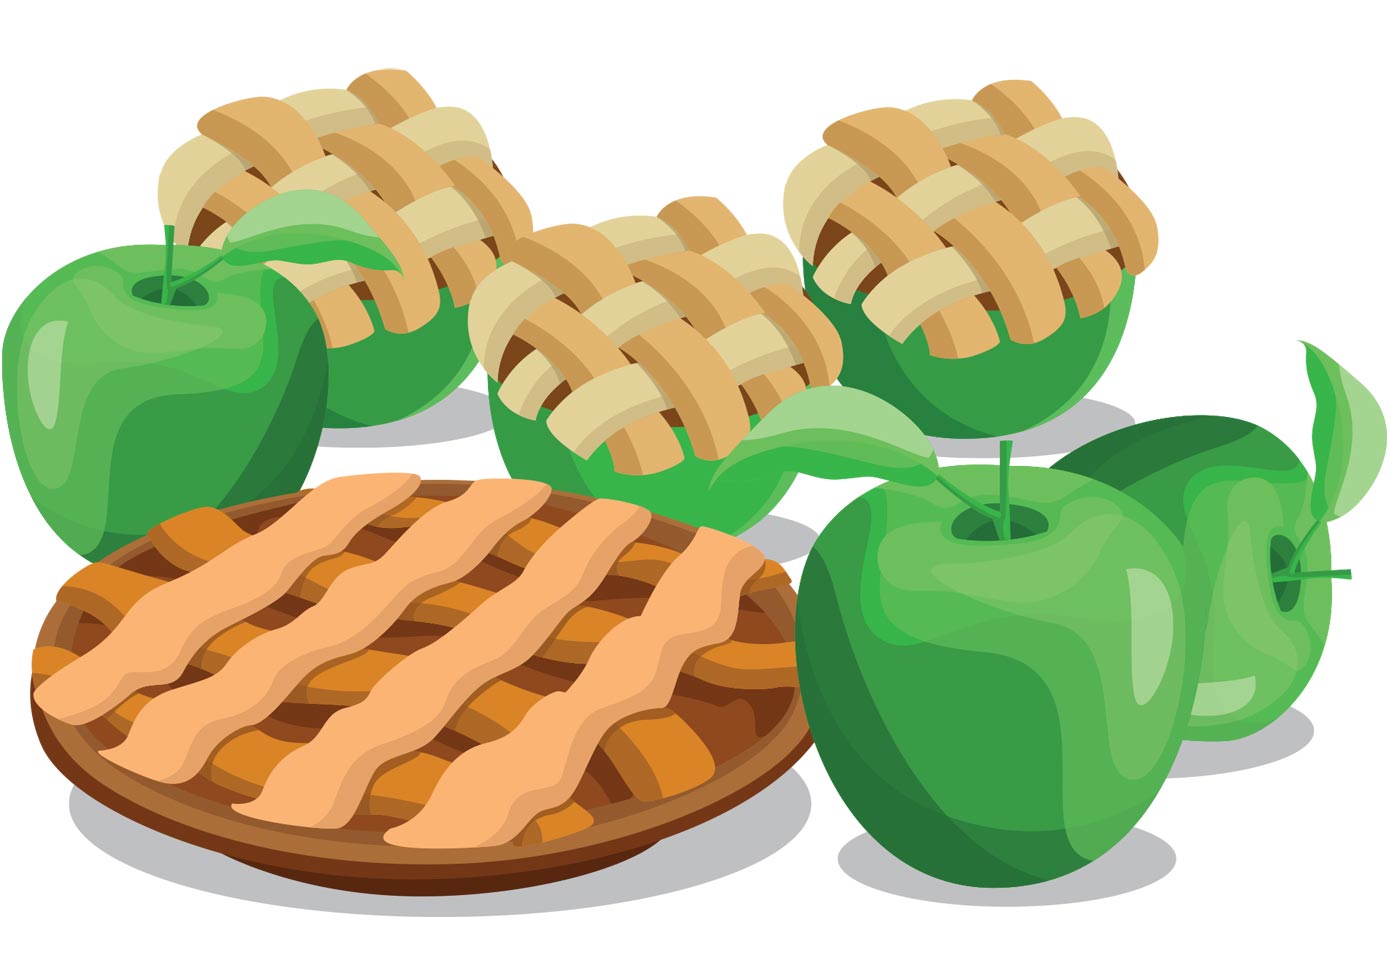 Apple Pie Vectors Download Free Vector Art, Stock